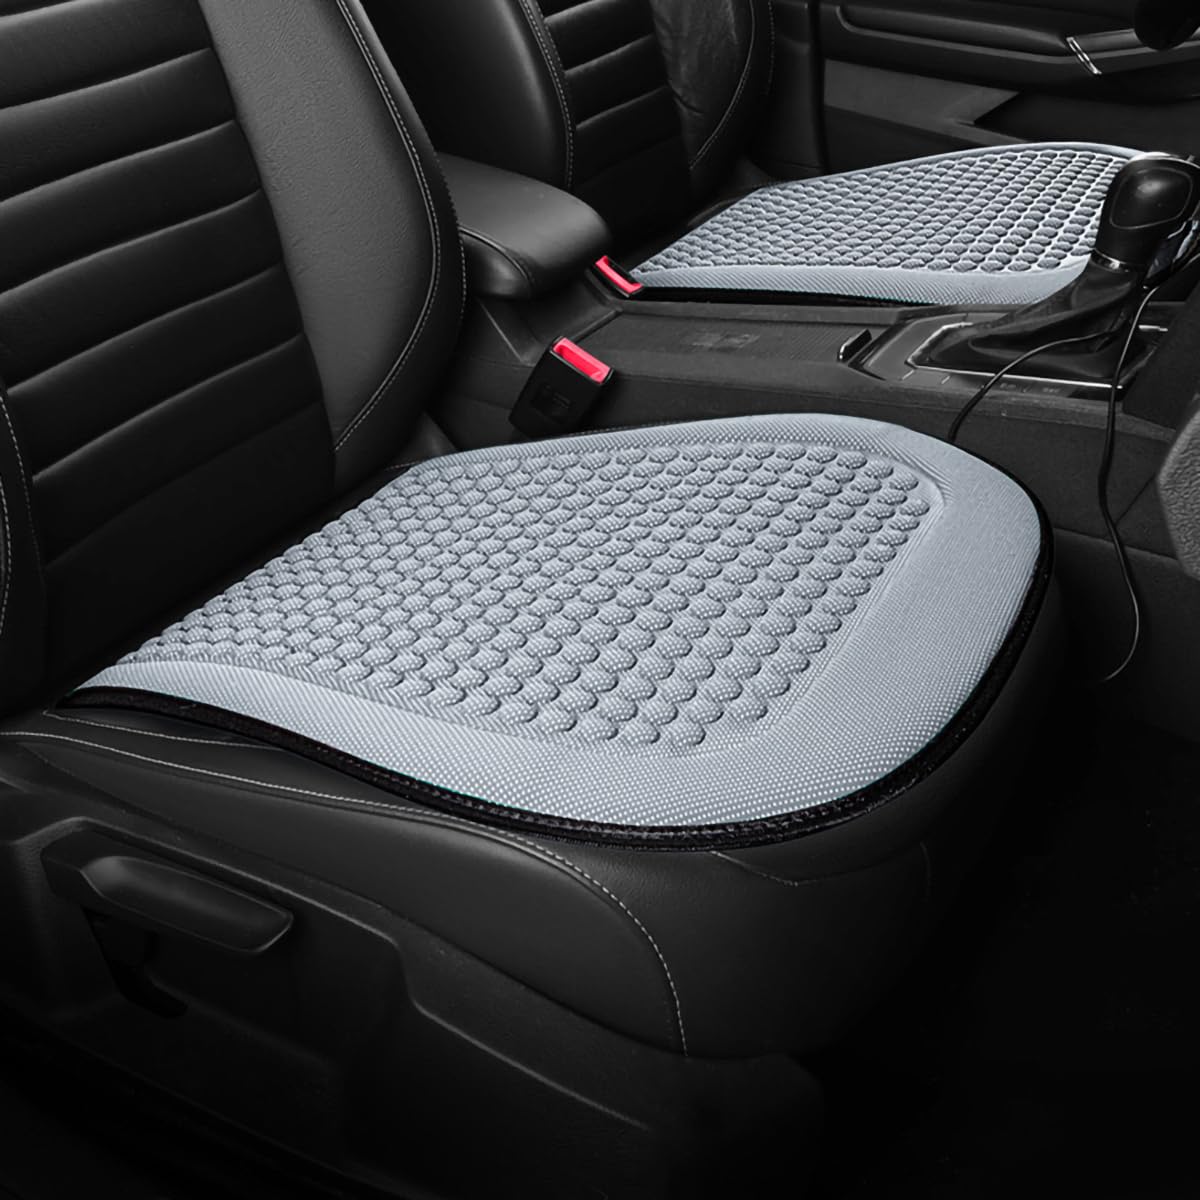 Spulhc Autositzbezug für Hyundai Verna 2010-2016, kühles Sitzkissen aus Eisseide, kühlendes/atmungsaktives Kissen,A-gray-2 Cushion von Spulhc